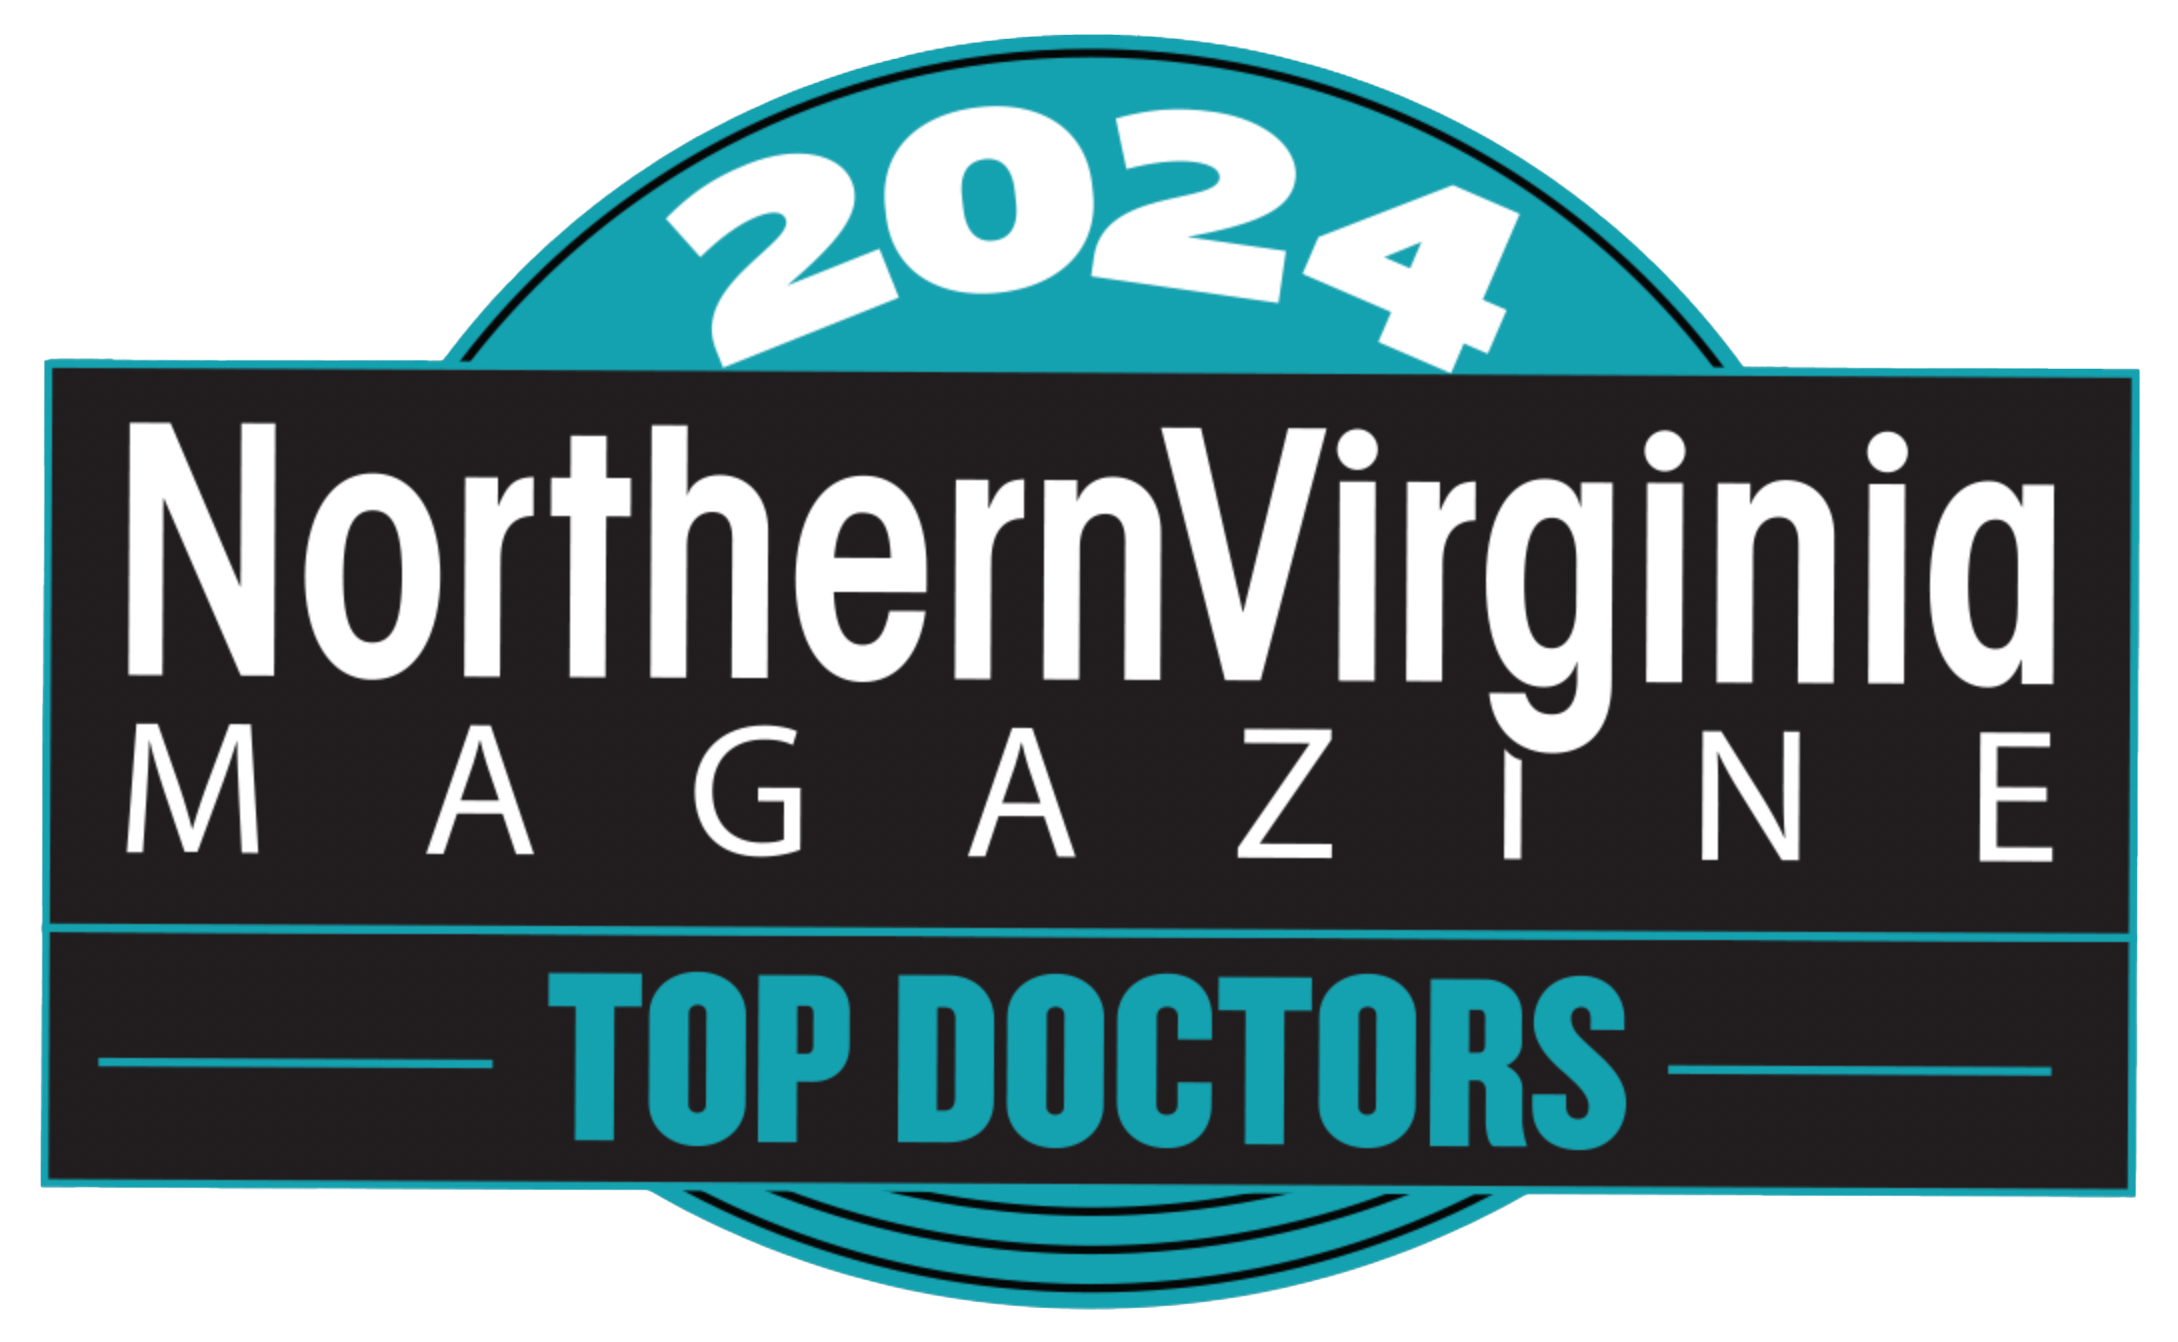 2024 Northern Virginia Magazine Top Doctors - Dr. Brenda Dintiman